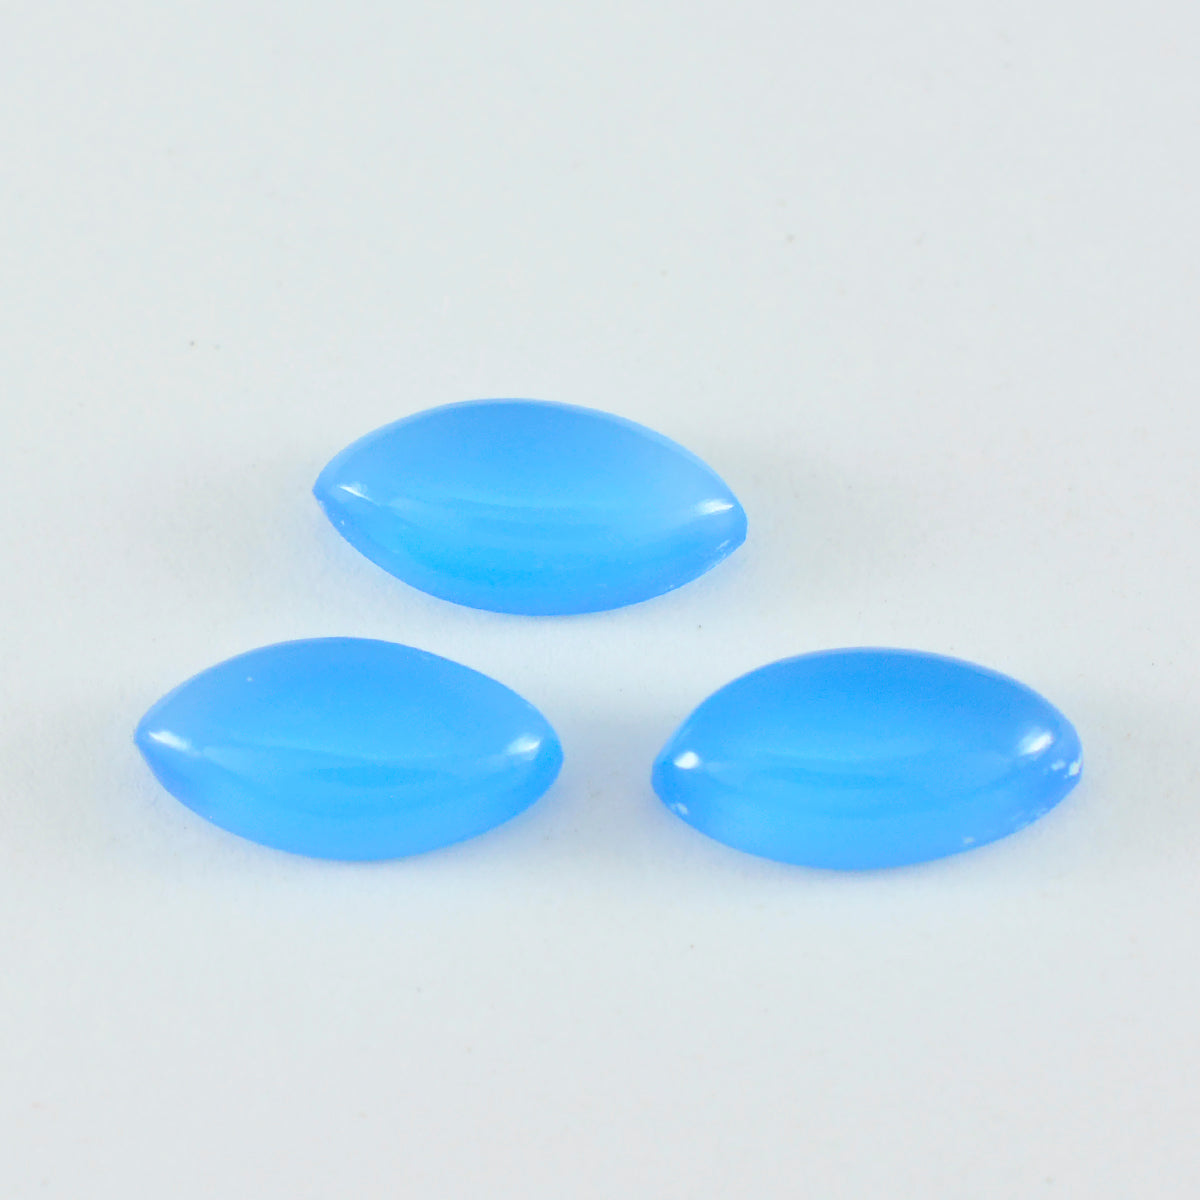 Riyogems 1 Stück blauer Chalcedon-Cabochon, 6 x 12 mm, Marquise-Form, wunderschöner, hochwertiger, loser Edelstein